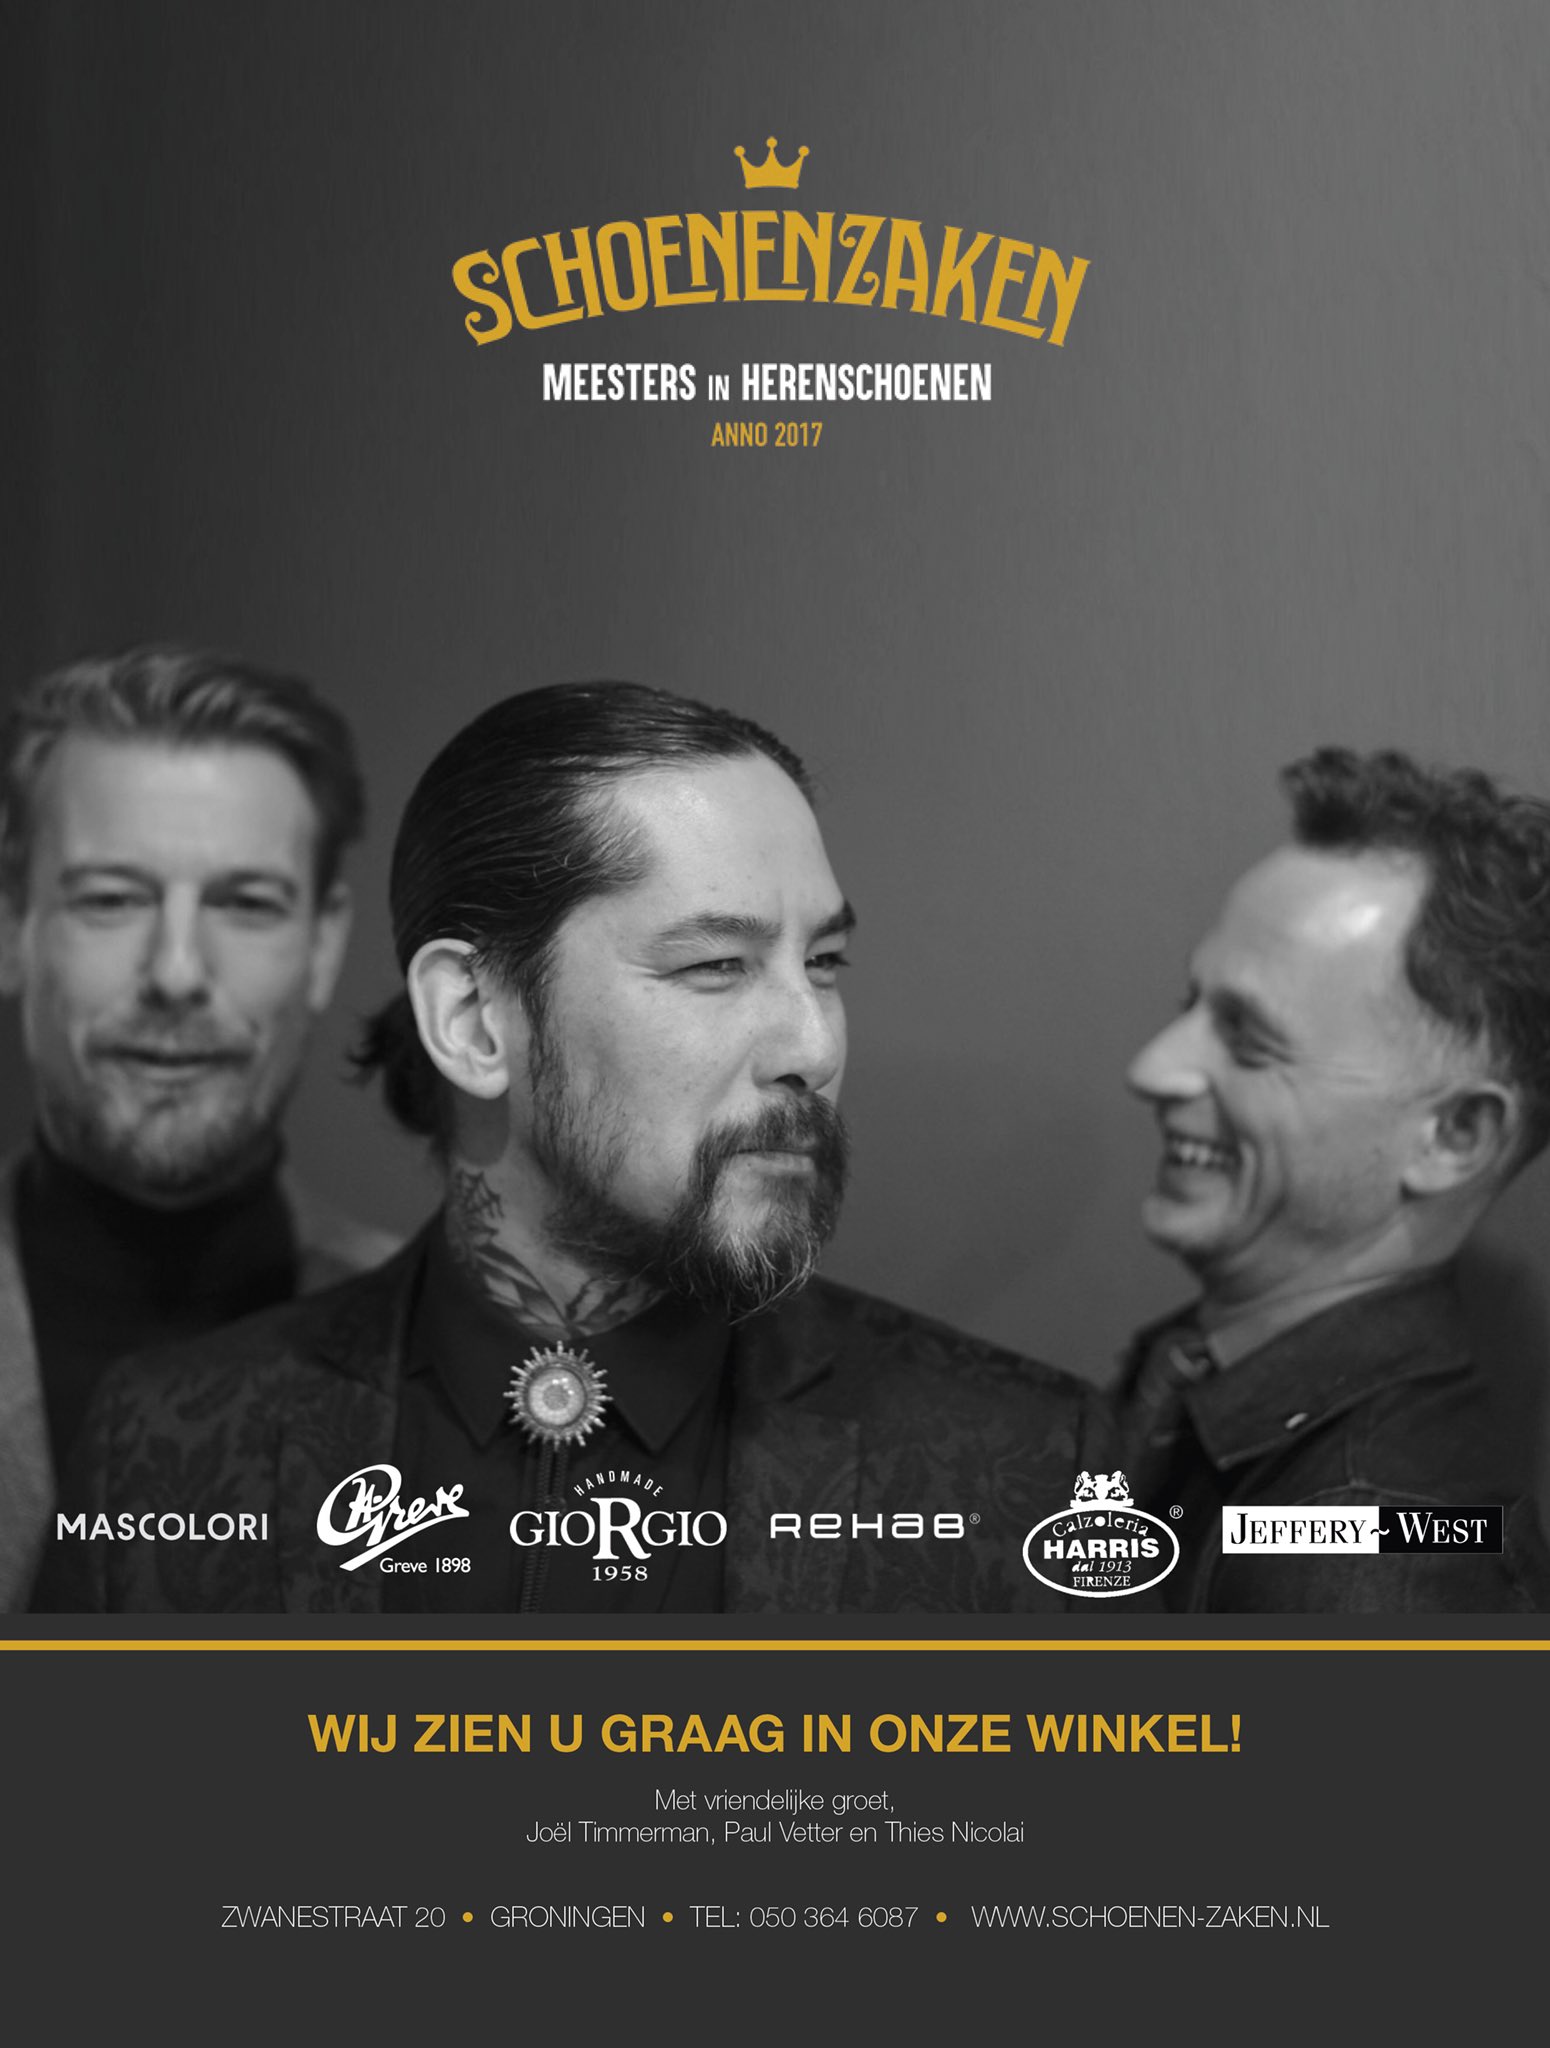 Het hotel Zwembad Uitrusting SchoenenZaken on Twitter: "SchoenenZaken - Meesters in Herenschoenen -  Zwanestraat 20 - Groningen - https://t.co/2YQBGWRAk8  https://t.co/4ZyqGuY79o" / Twitter